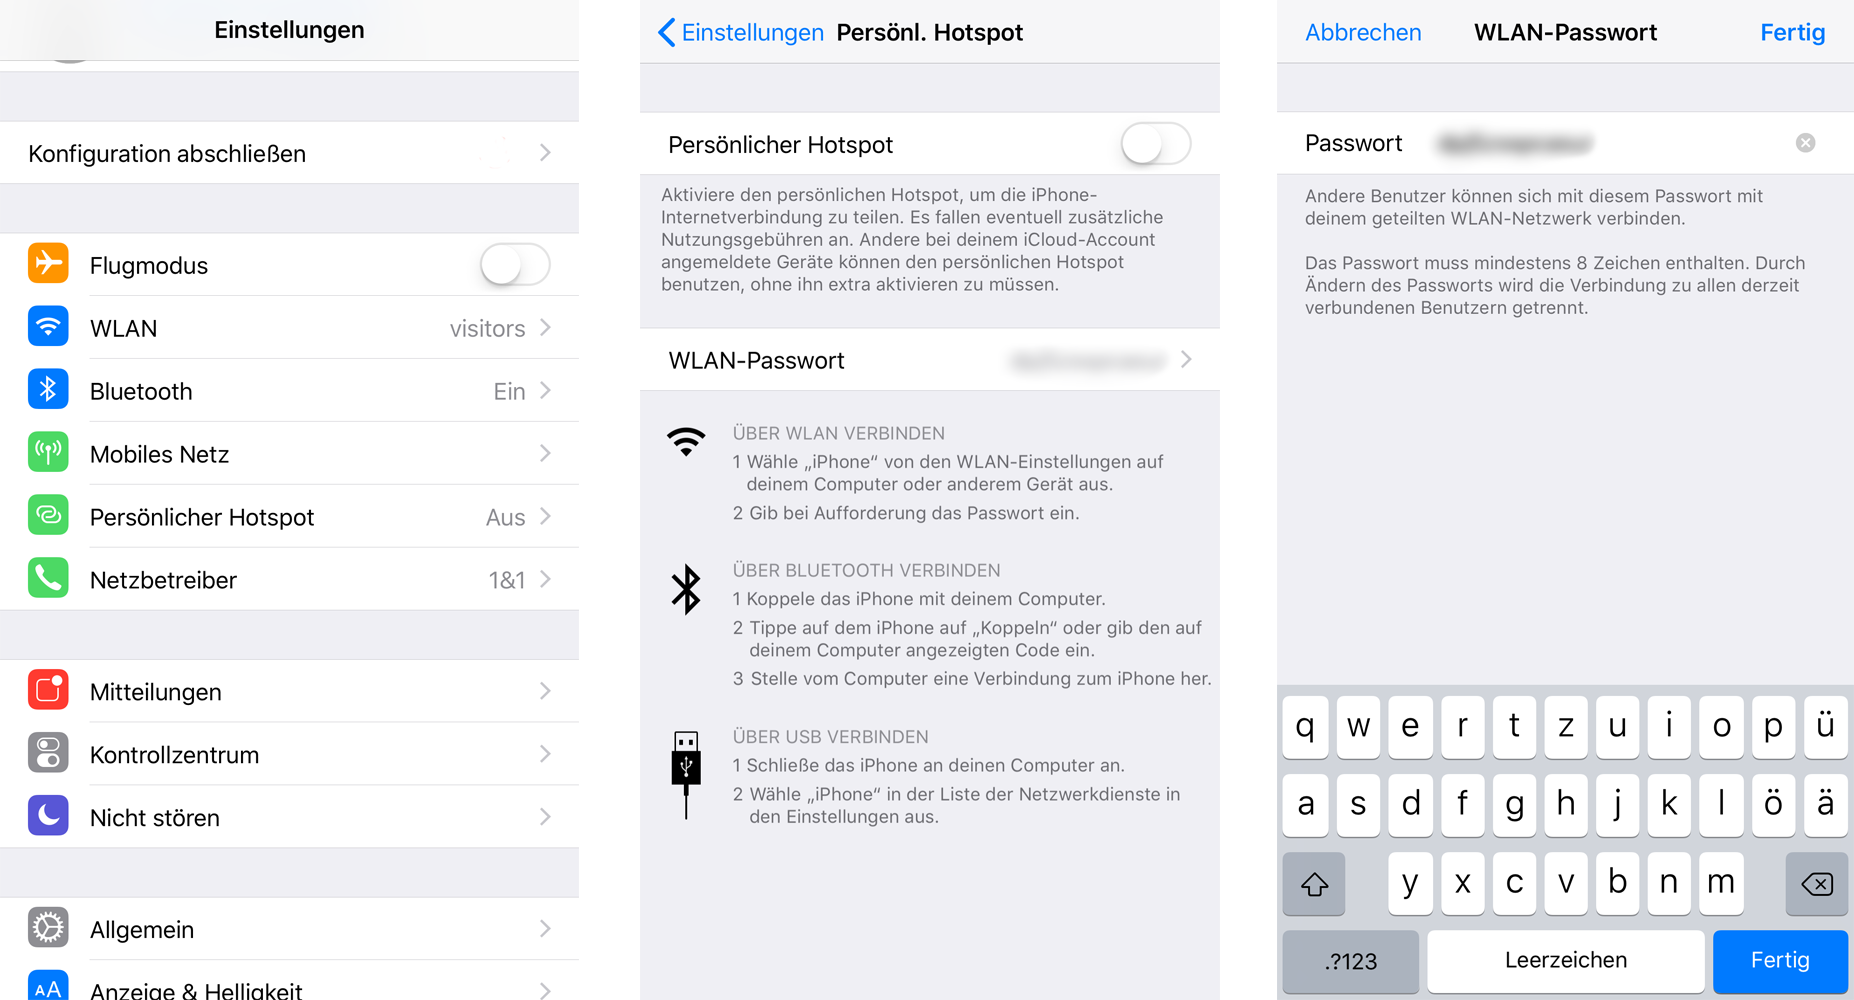 Smartphone Einstellungen für WLAN-Hotspot in iOS